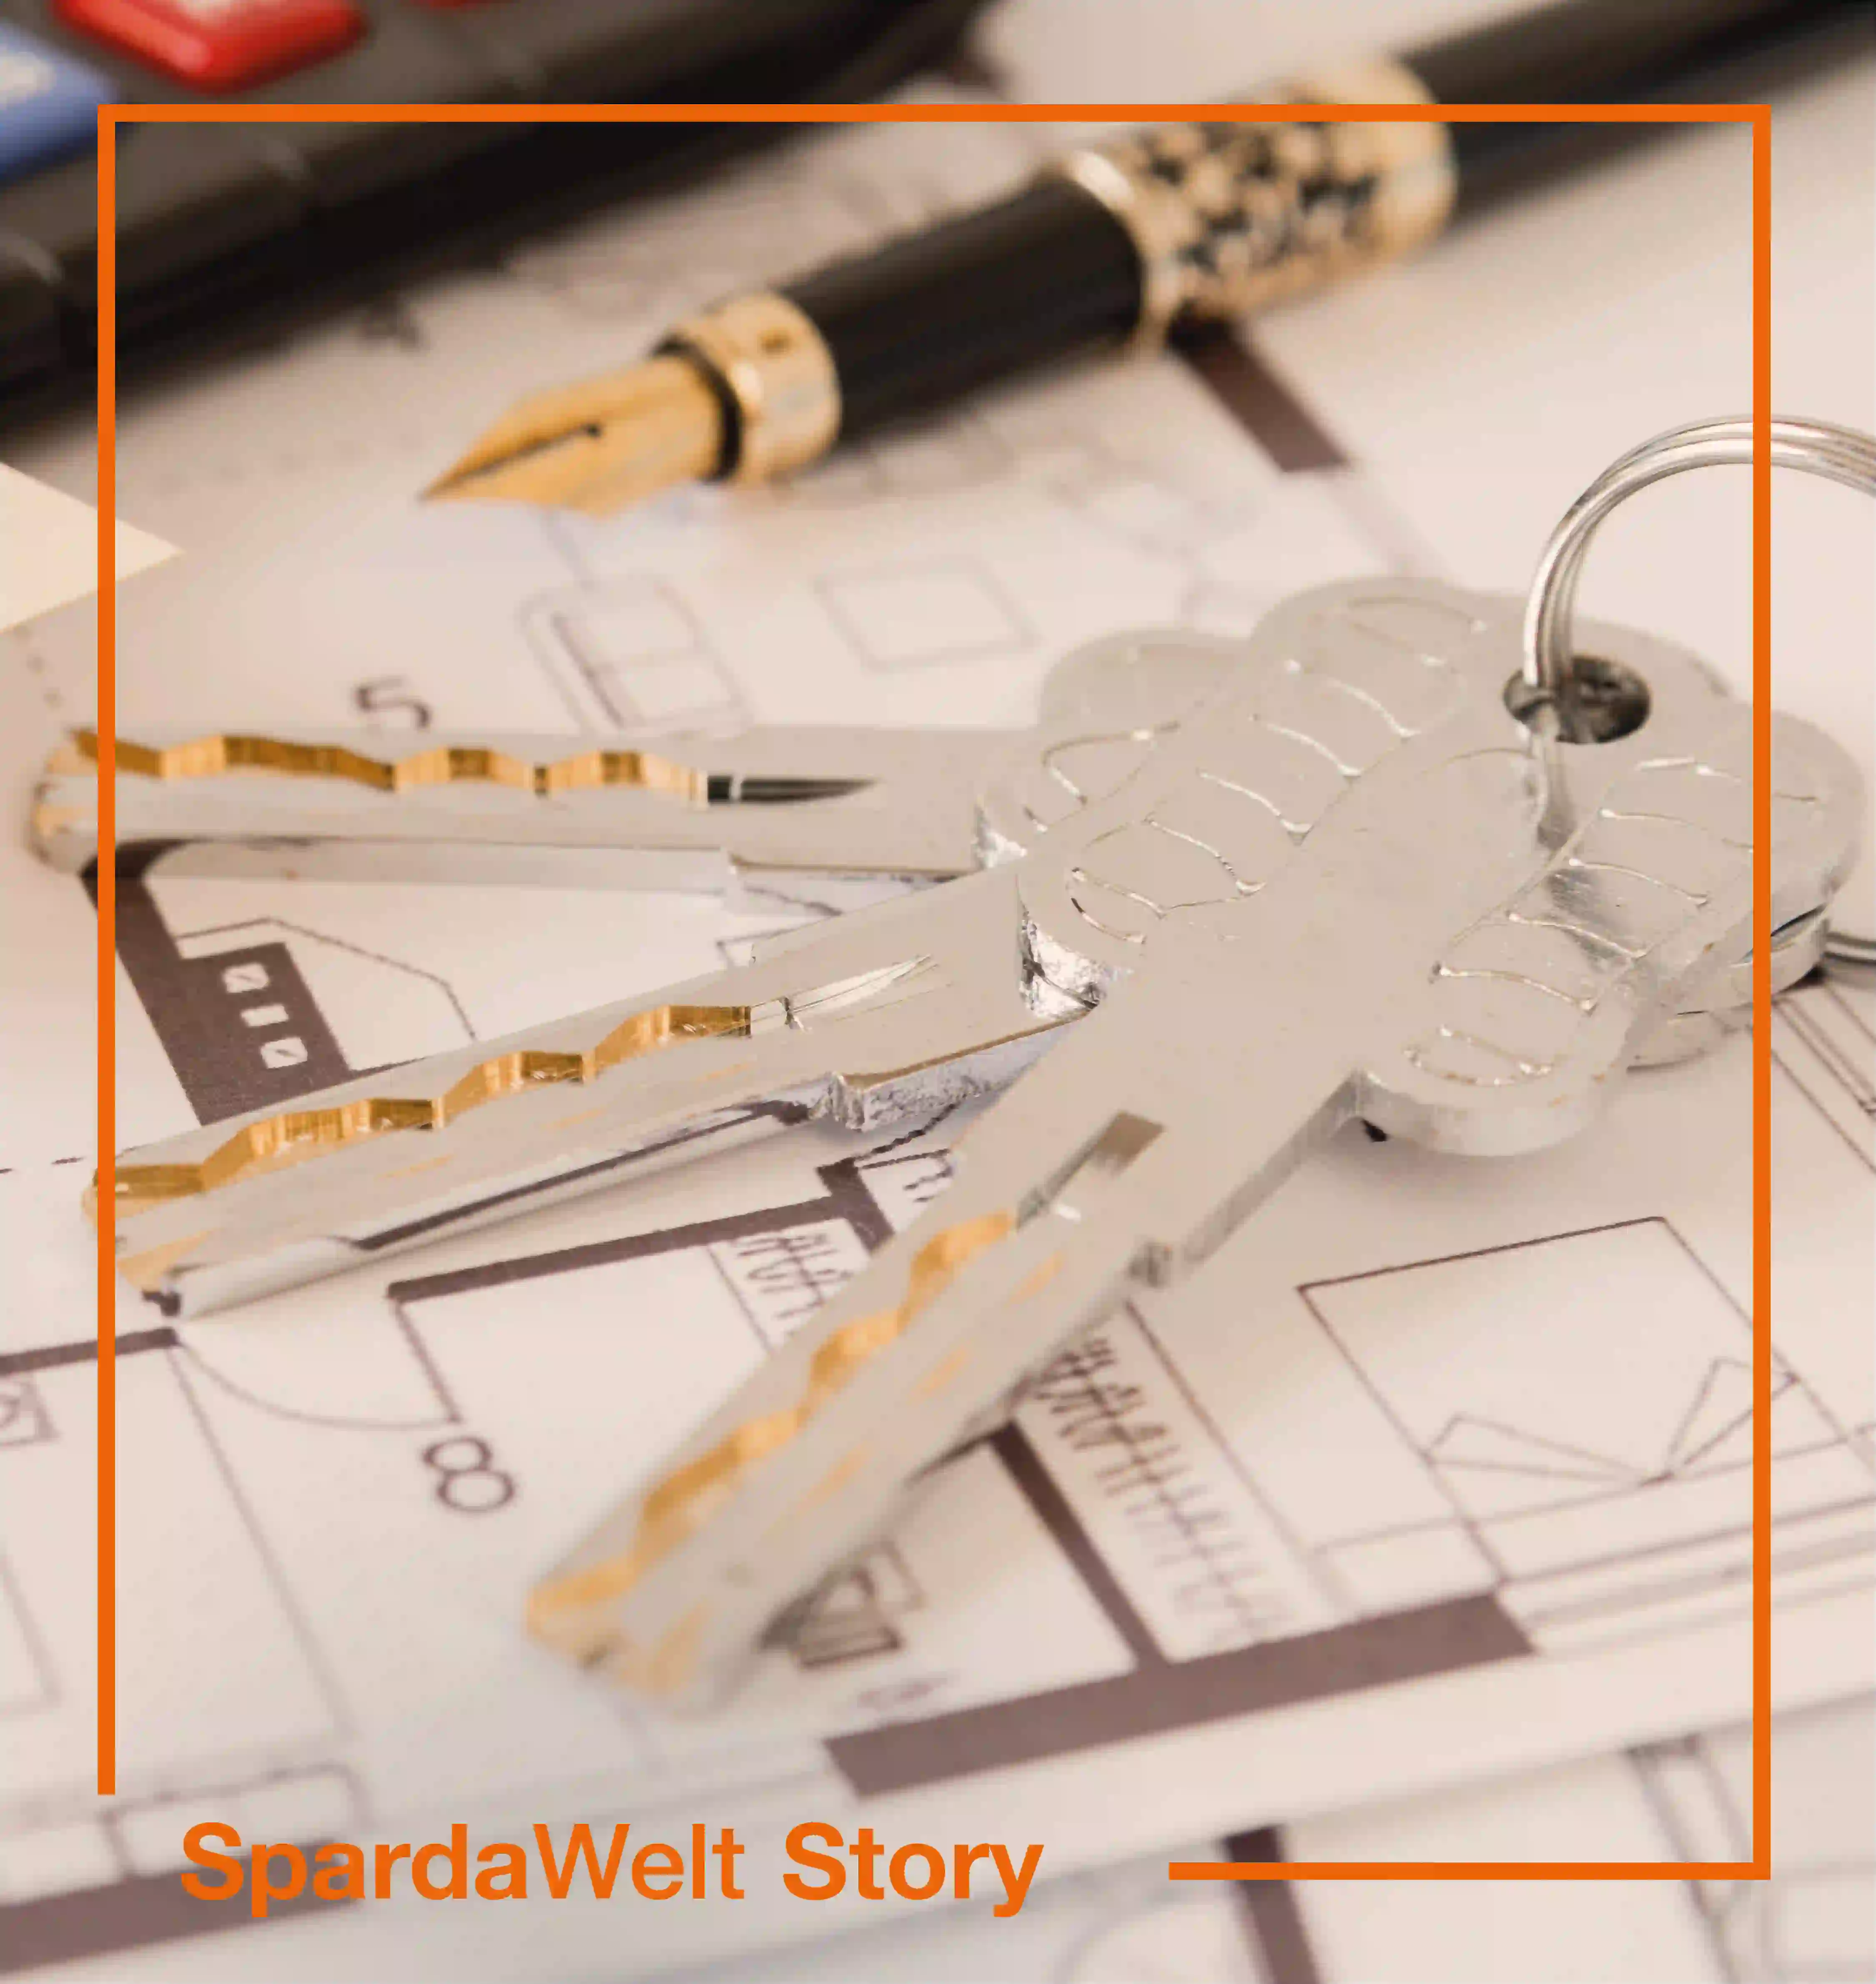 Auf einem Tisch liegen Schlüssel, ein Rechner und Pläne für einen Hausbau.Um das Bild herum ist ein orangener Rahmen. Der Schriftzug "SpardaWelt Story" weißt darauf hin, dass es sich um eine Empfehlung zu einer anderen SpardaWelt Story handelt.